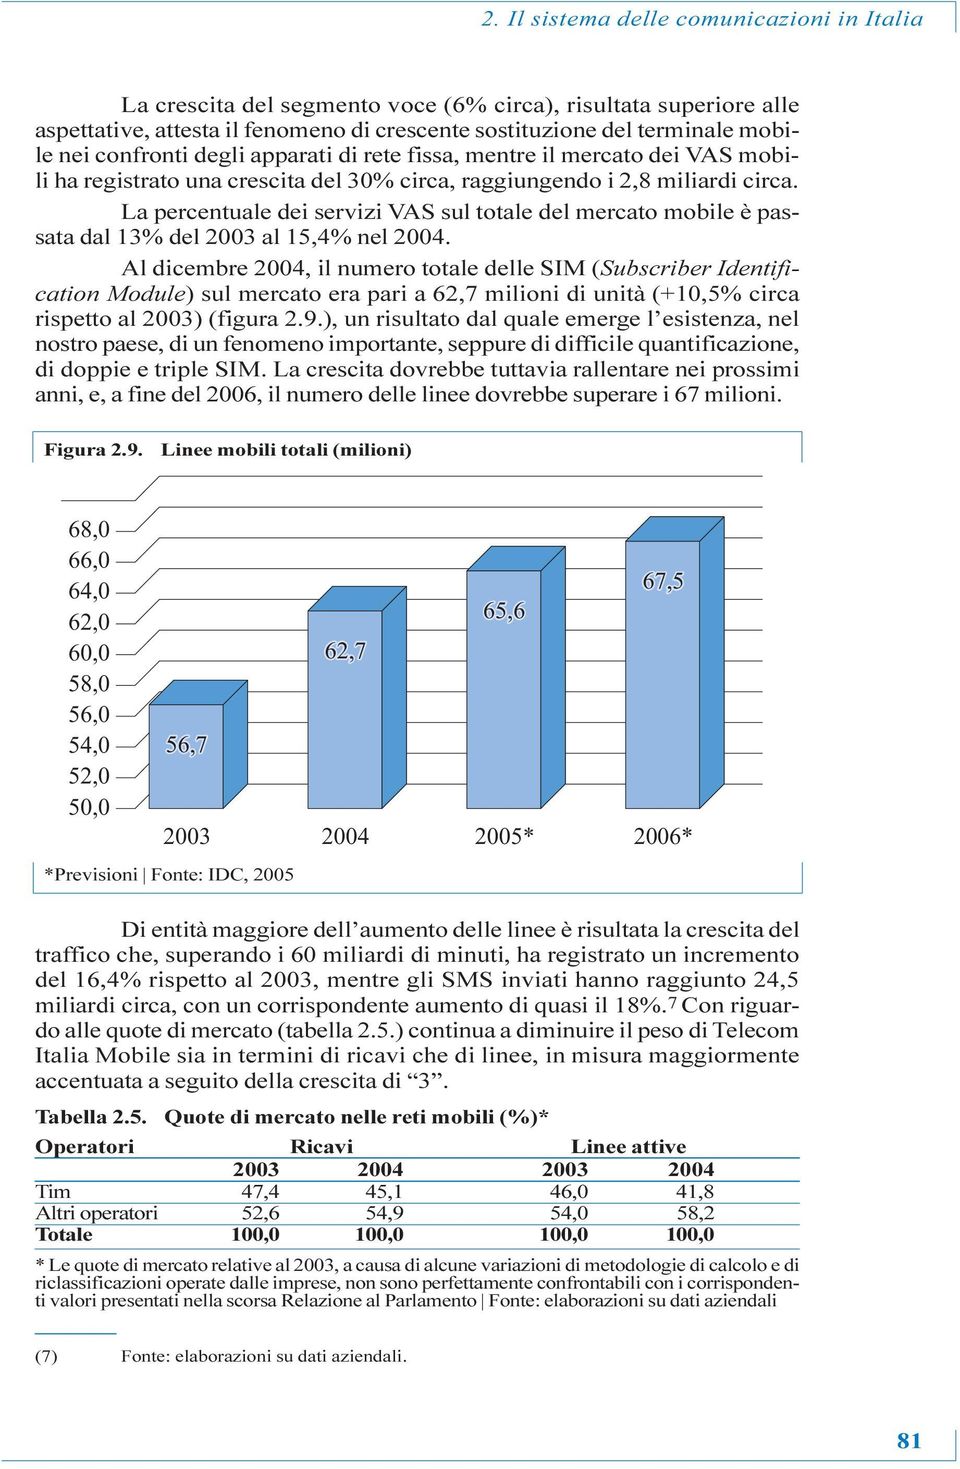 La percentuale dei servizi VAS sul totale del mercato mobile è passata dal 13% del 2003 al 15,4% nel 2004.